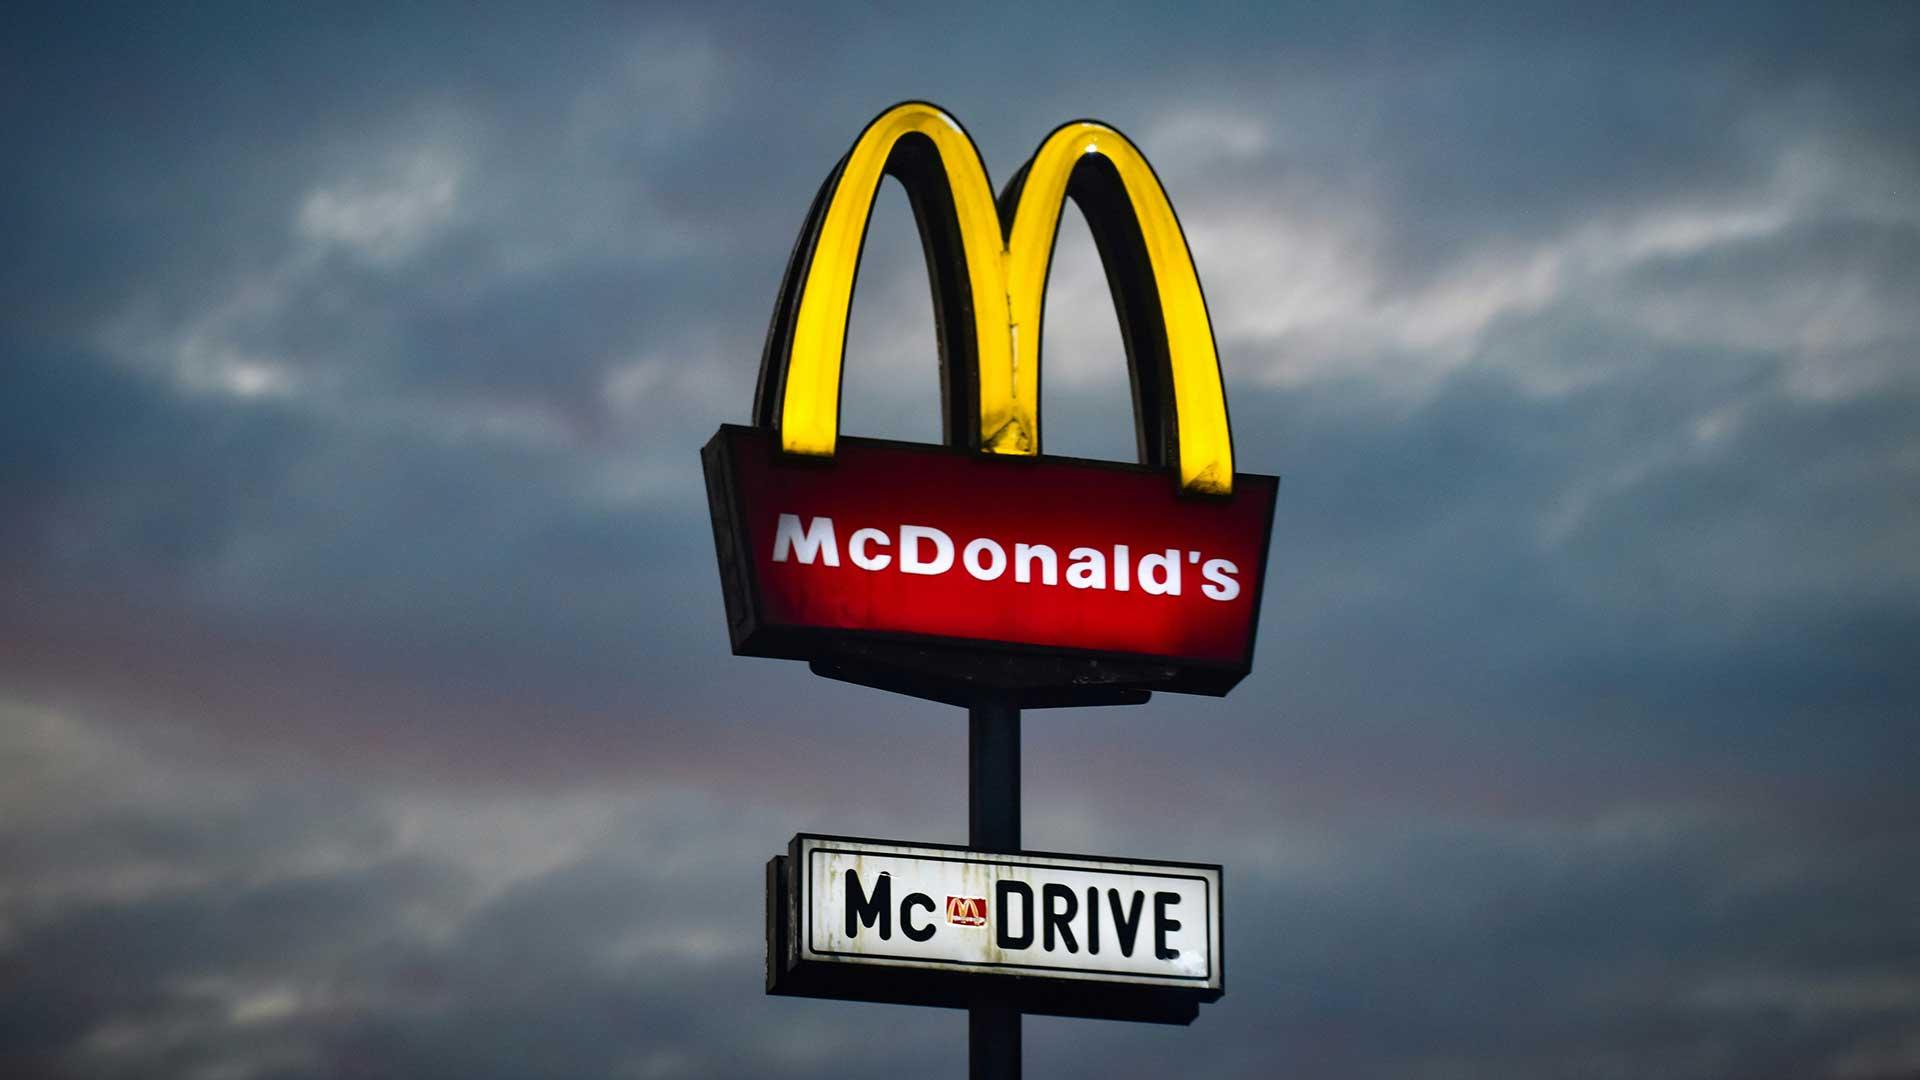 Dit is de grootste McDonald’s ter wereld